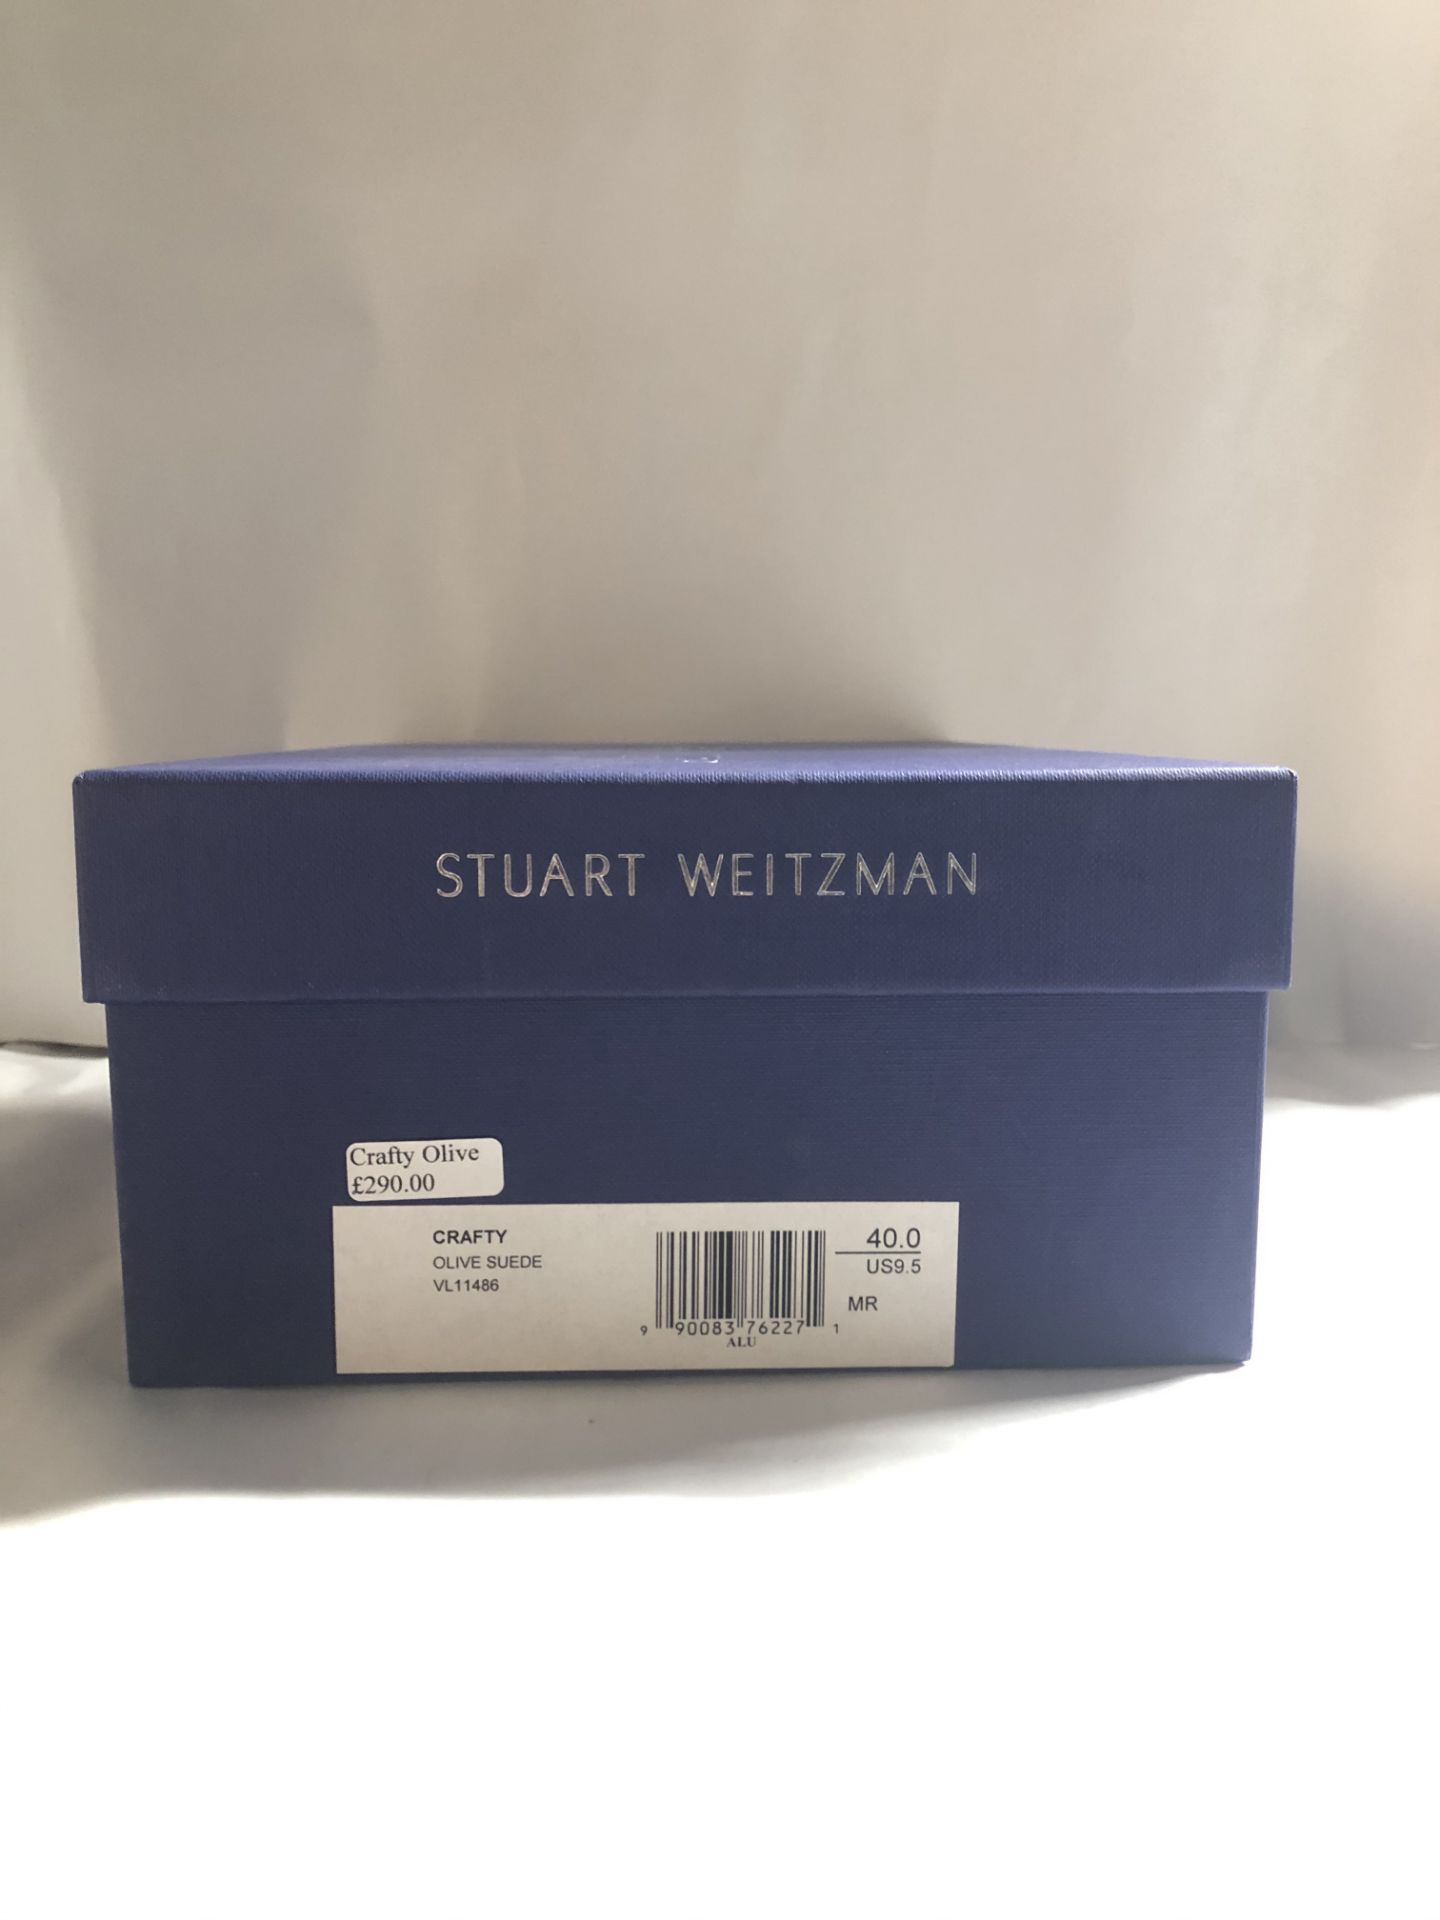 Stuart Weitzman Crafty Olive Suede Heels.EU 40 RRP £290.00 - Image 2 of 2